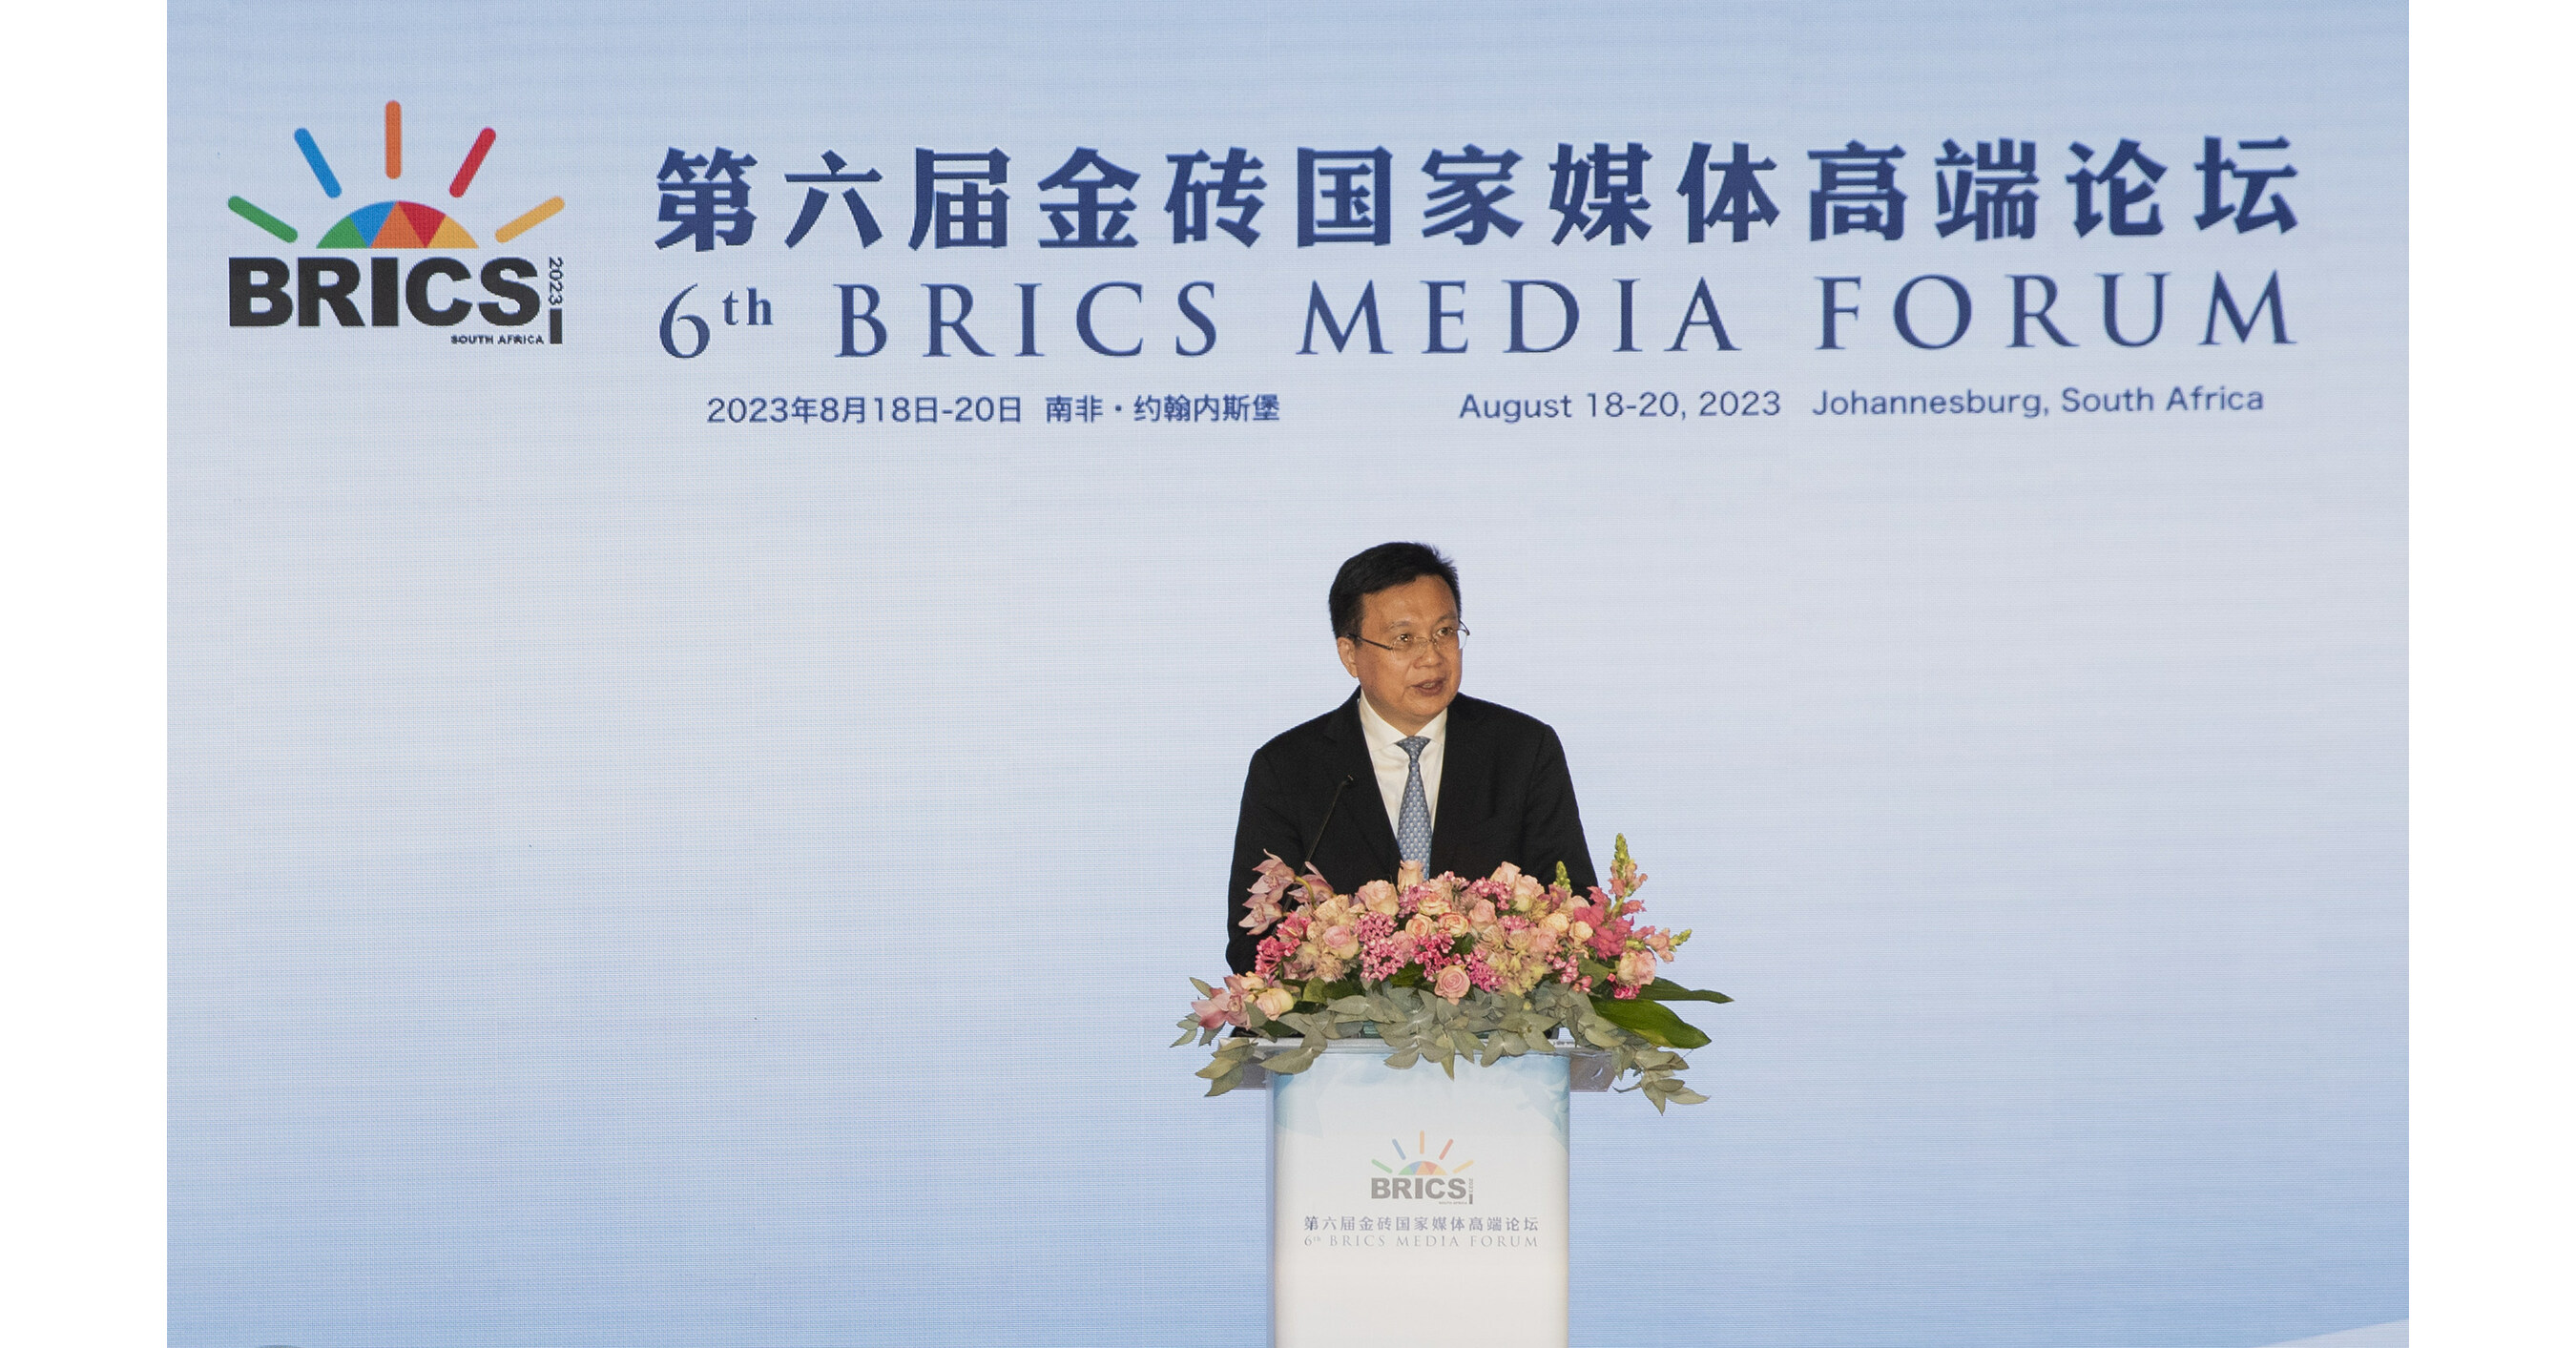 O Sexto Fórum de Mídia do BRICS apela ao fortalecimento do diálogo midiático para um futuro comum sem preconceitos